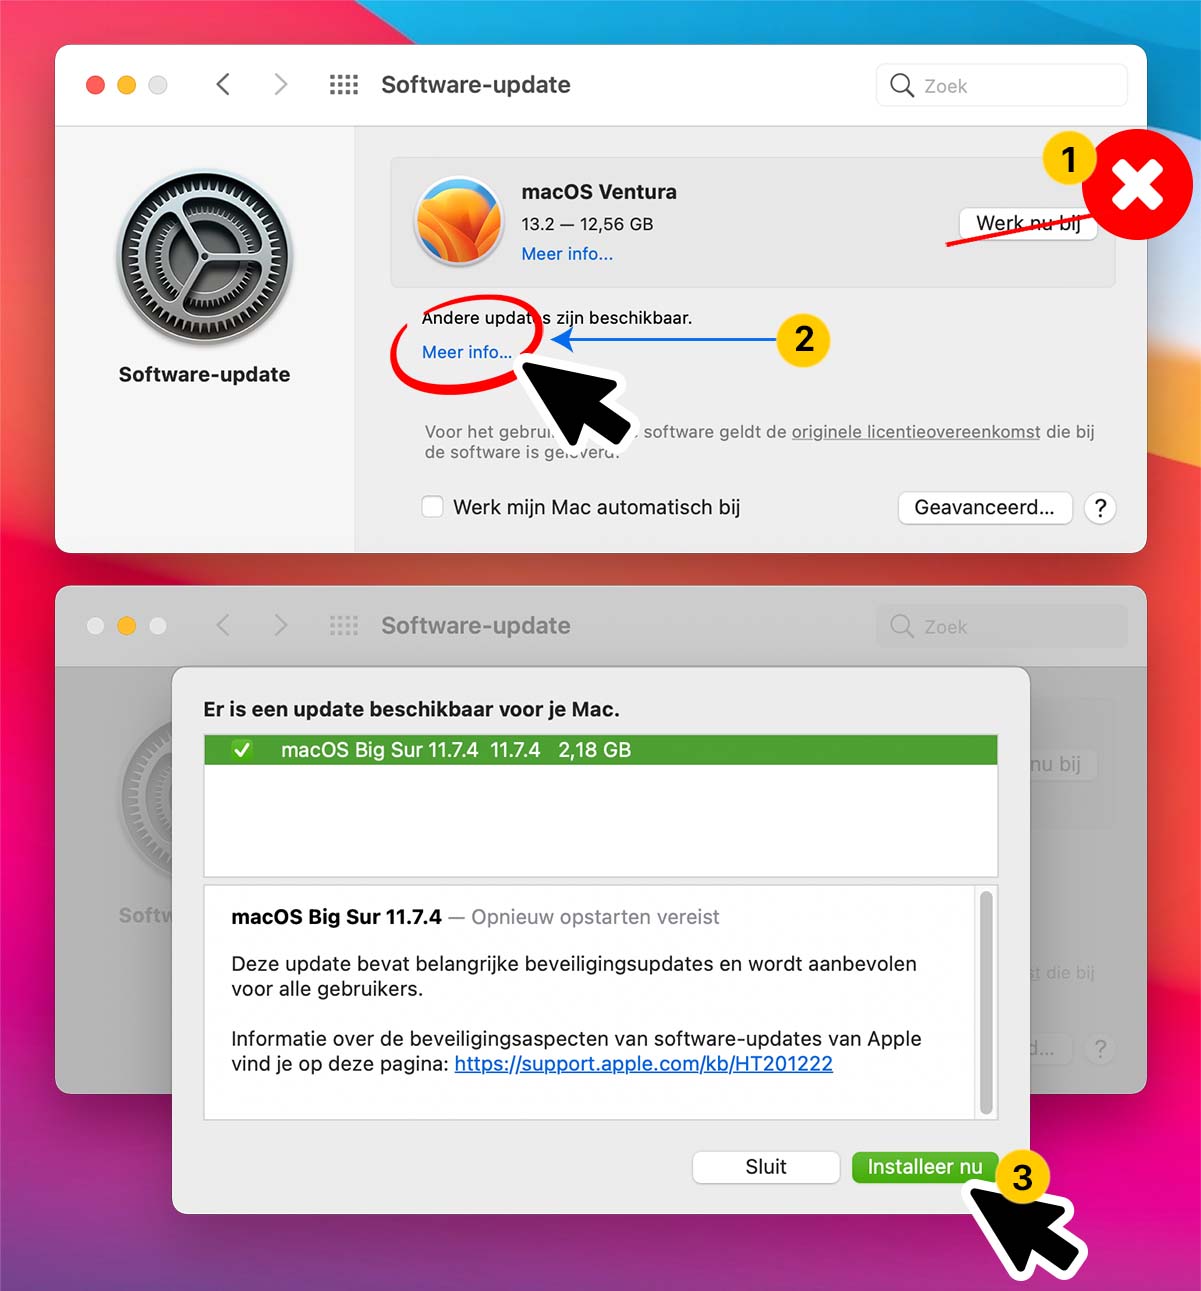 macOS Big Sur updaten naar versie 11.7.4